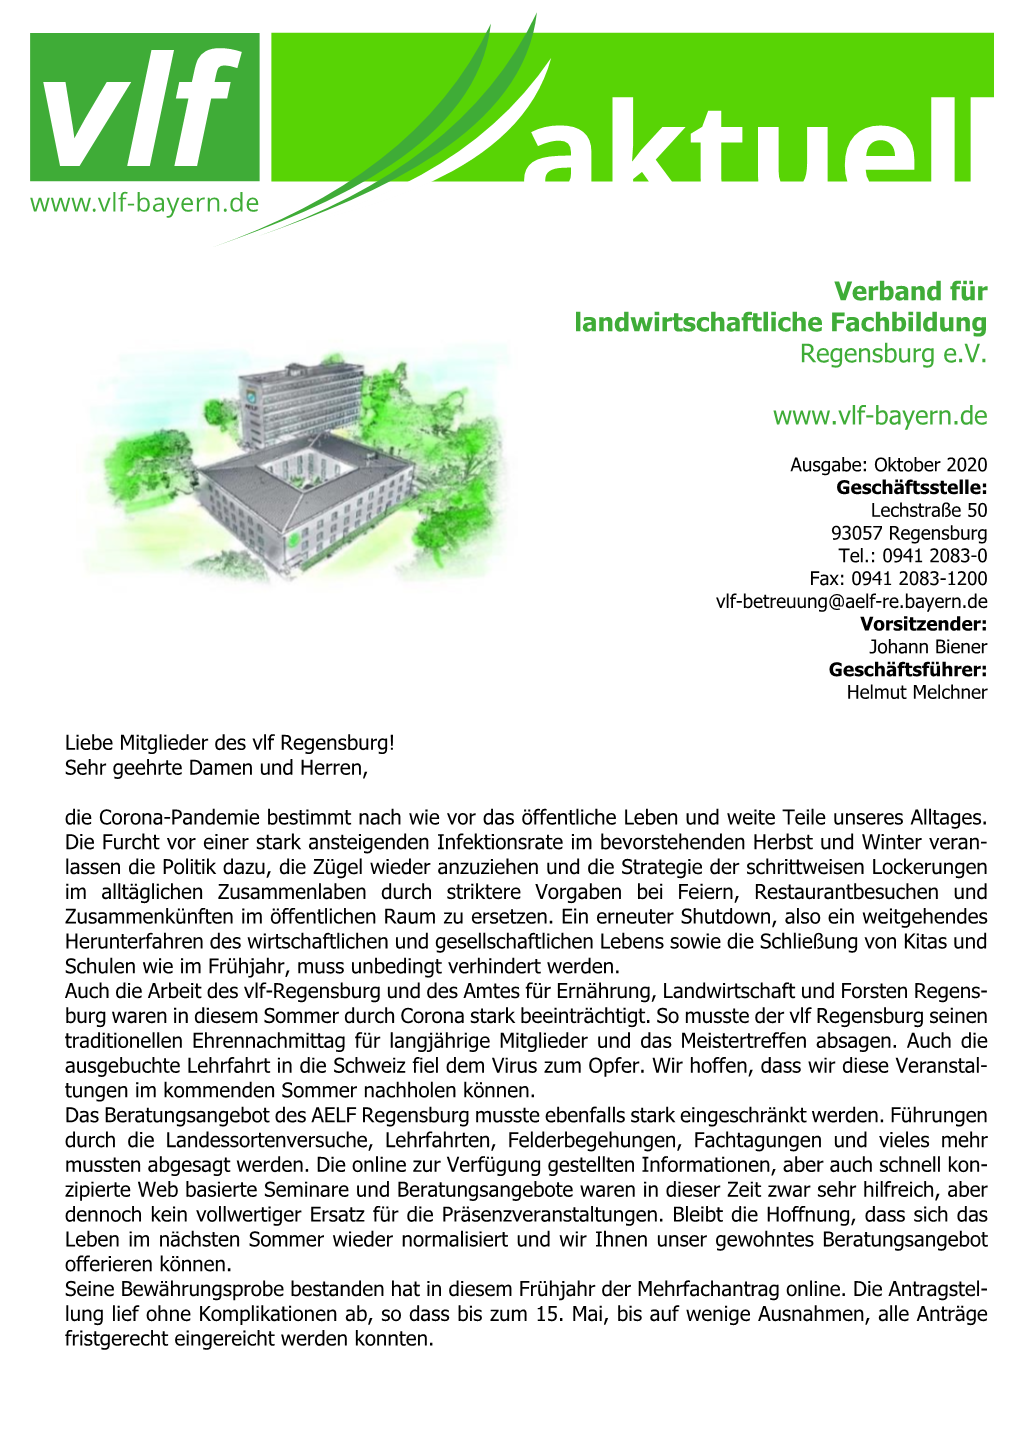 Verband Für Landwirtschaftliche Fachbildung Regensburg E.V